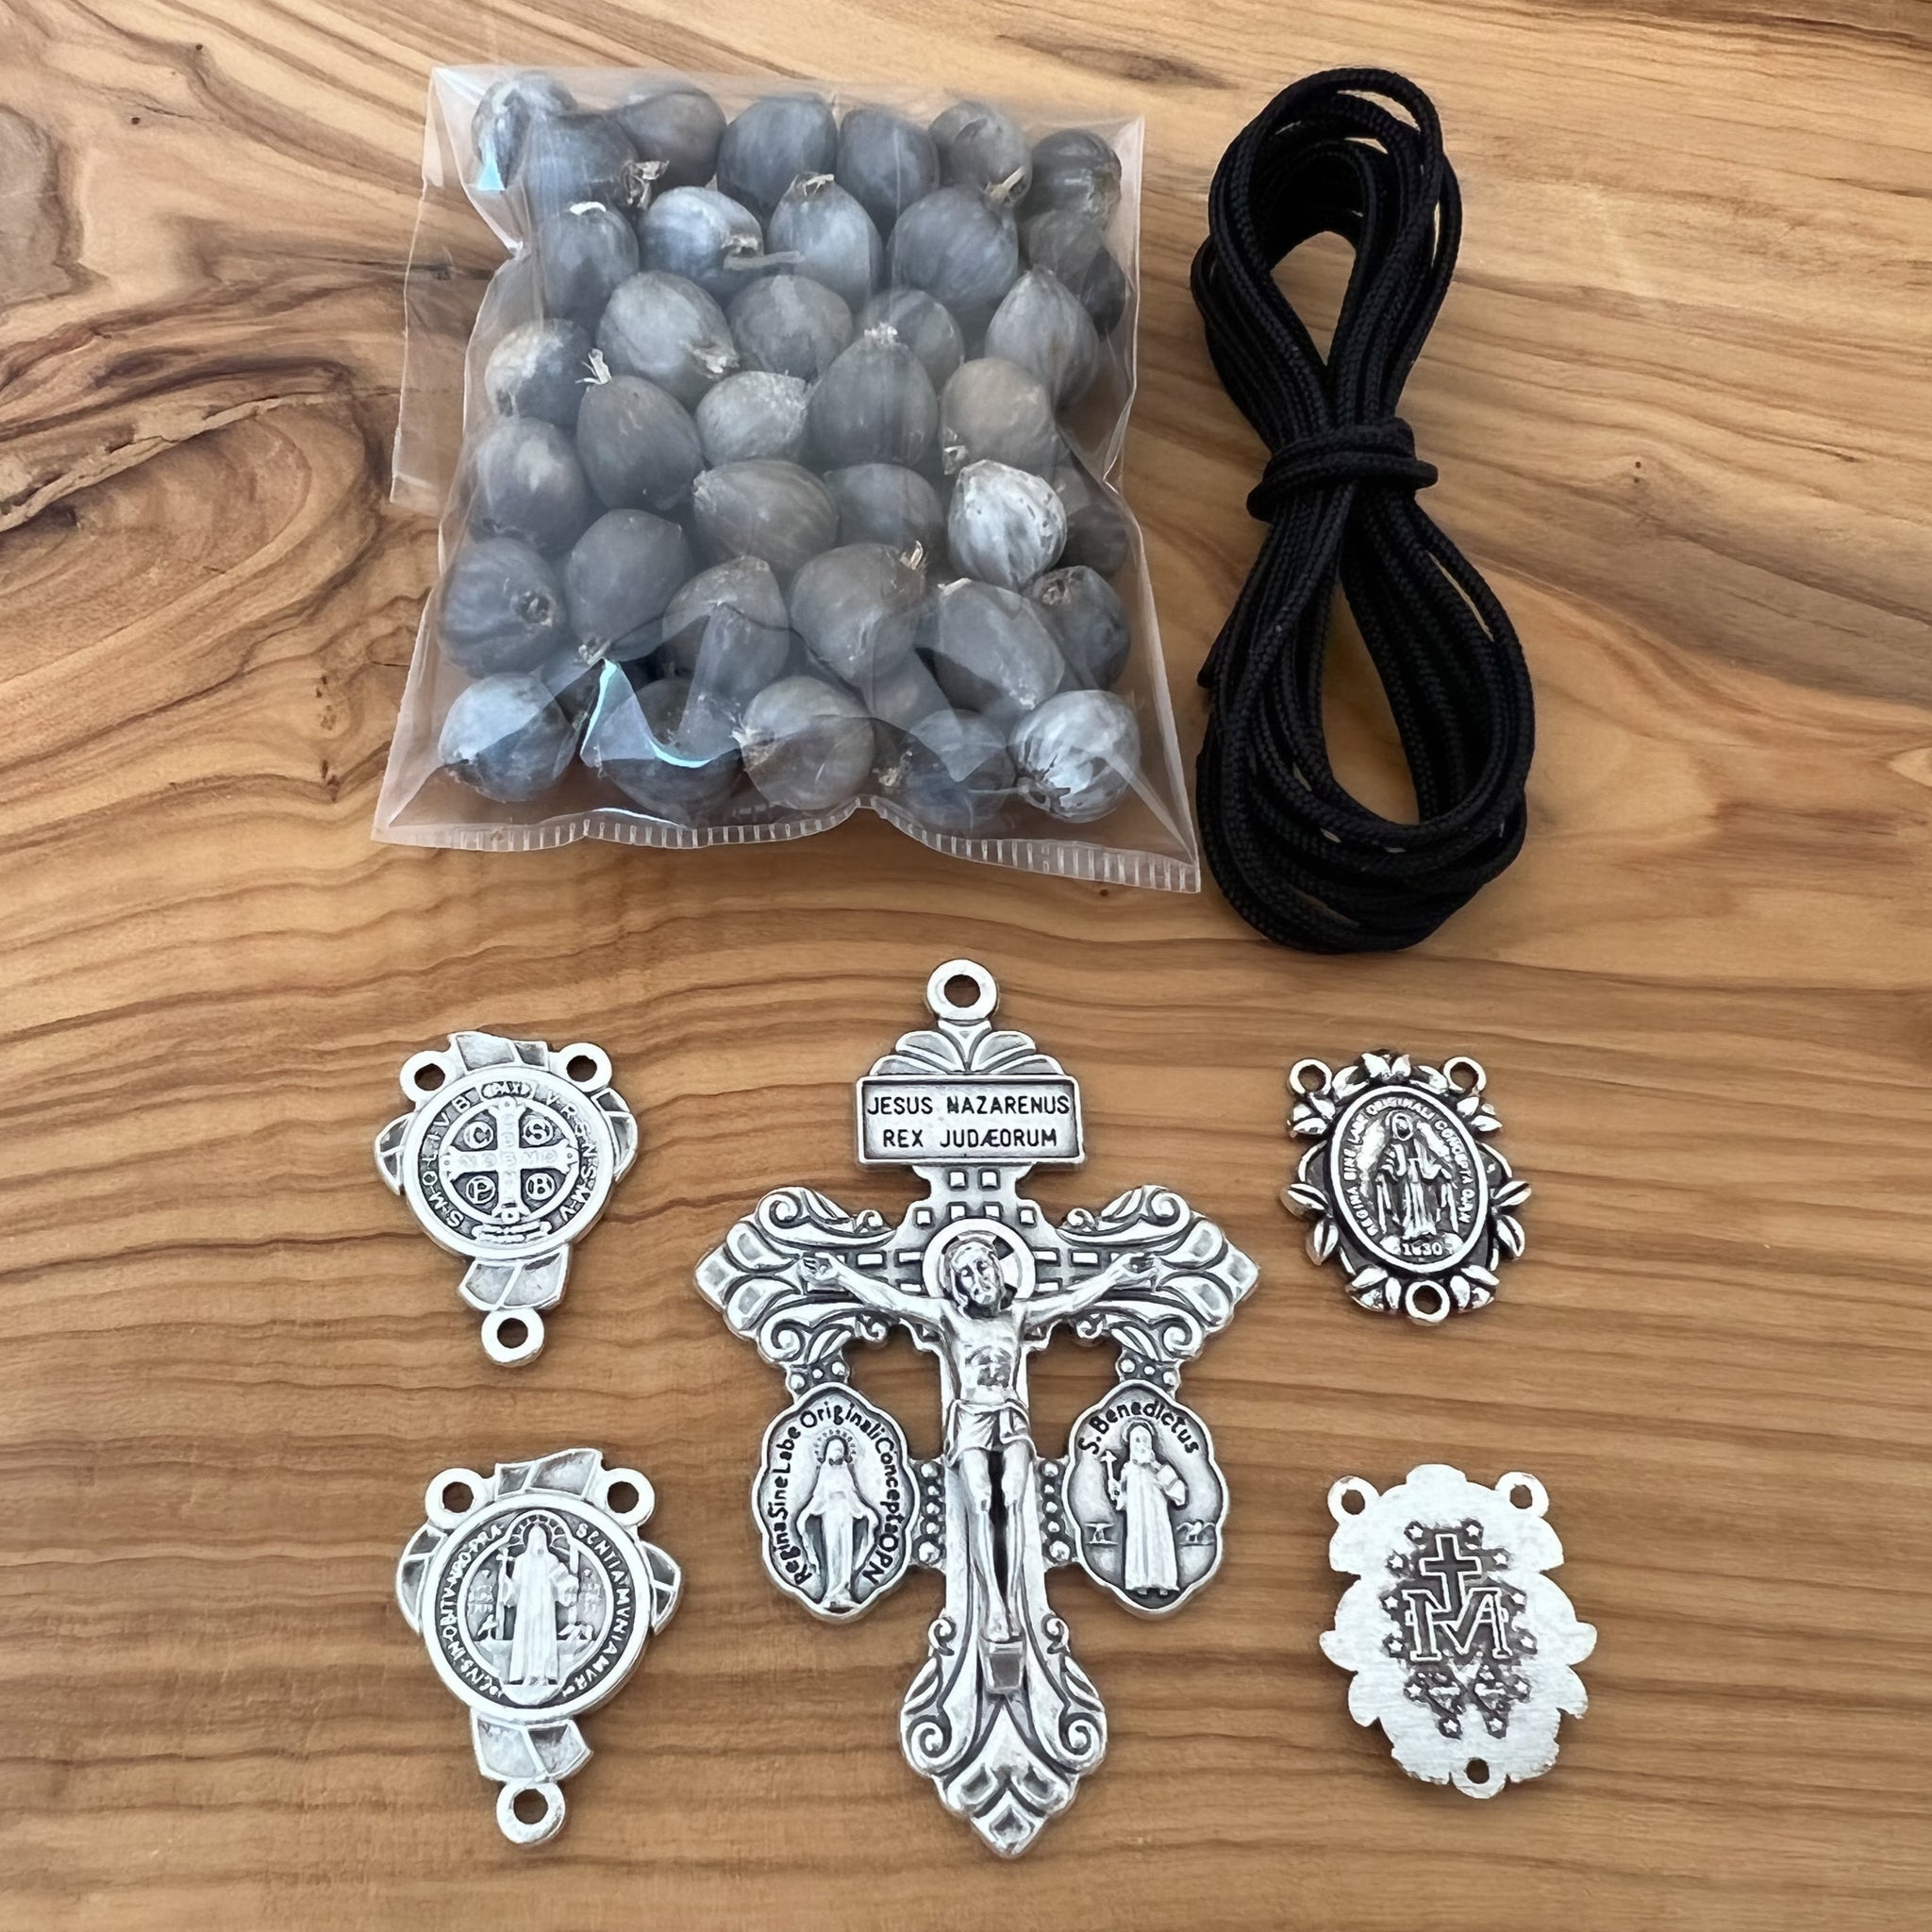 Crystal Bead Rosary Making Kit